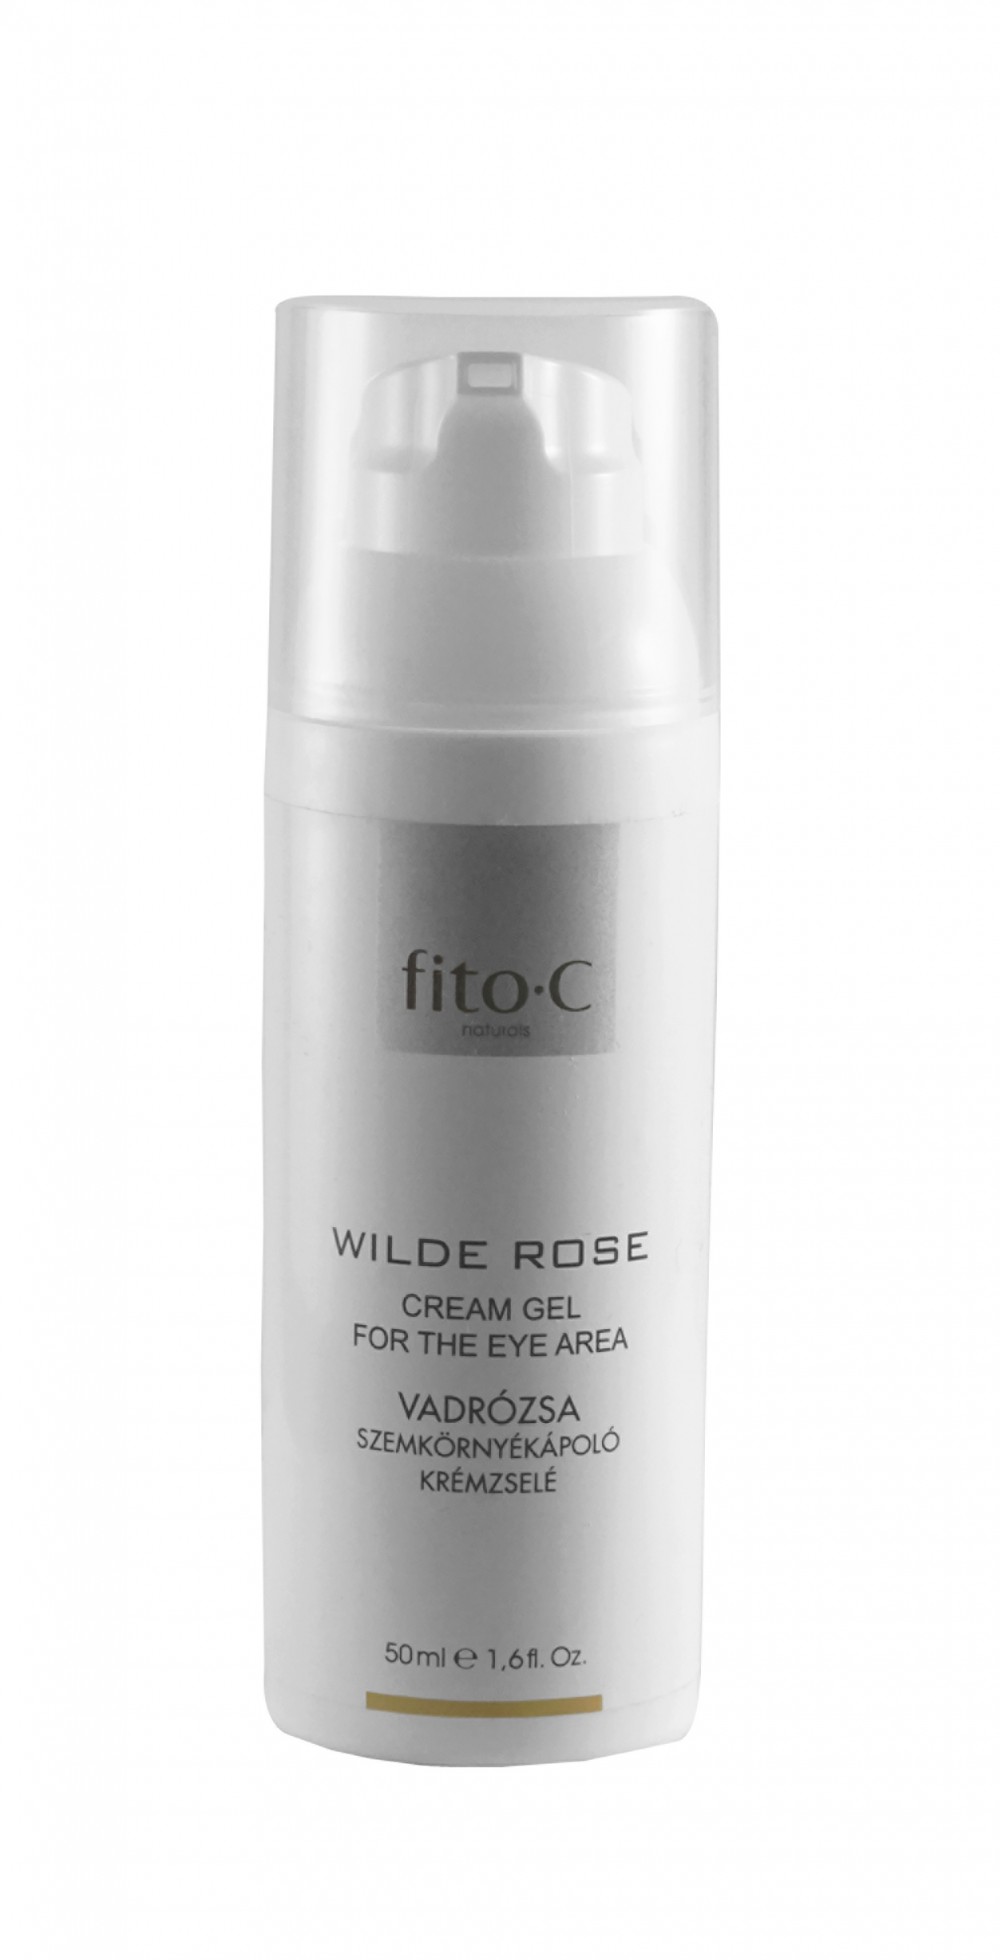 fito.C - Wilde Rose Cream Gel for the Eye Area - Vadrózsa Szemkörnyékápoló Krémzselé, 50ml